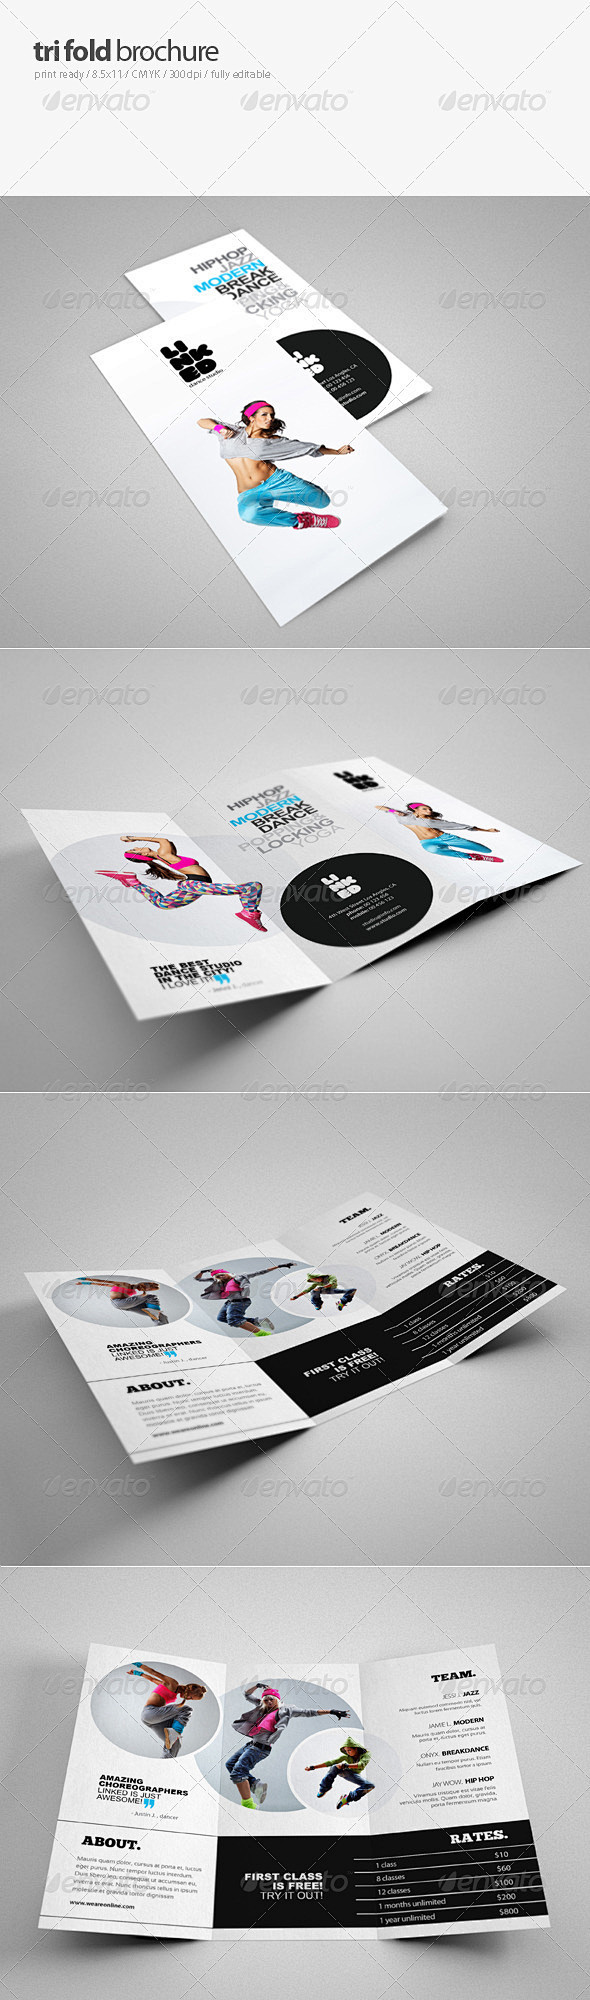 Dance Studio Brochur...